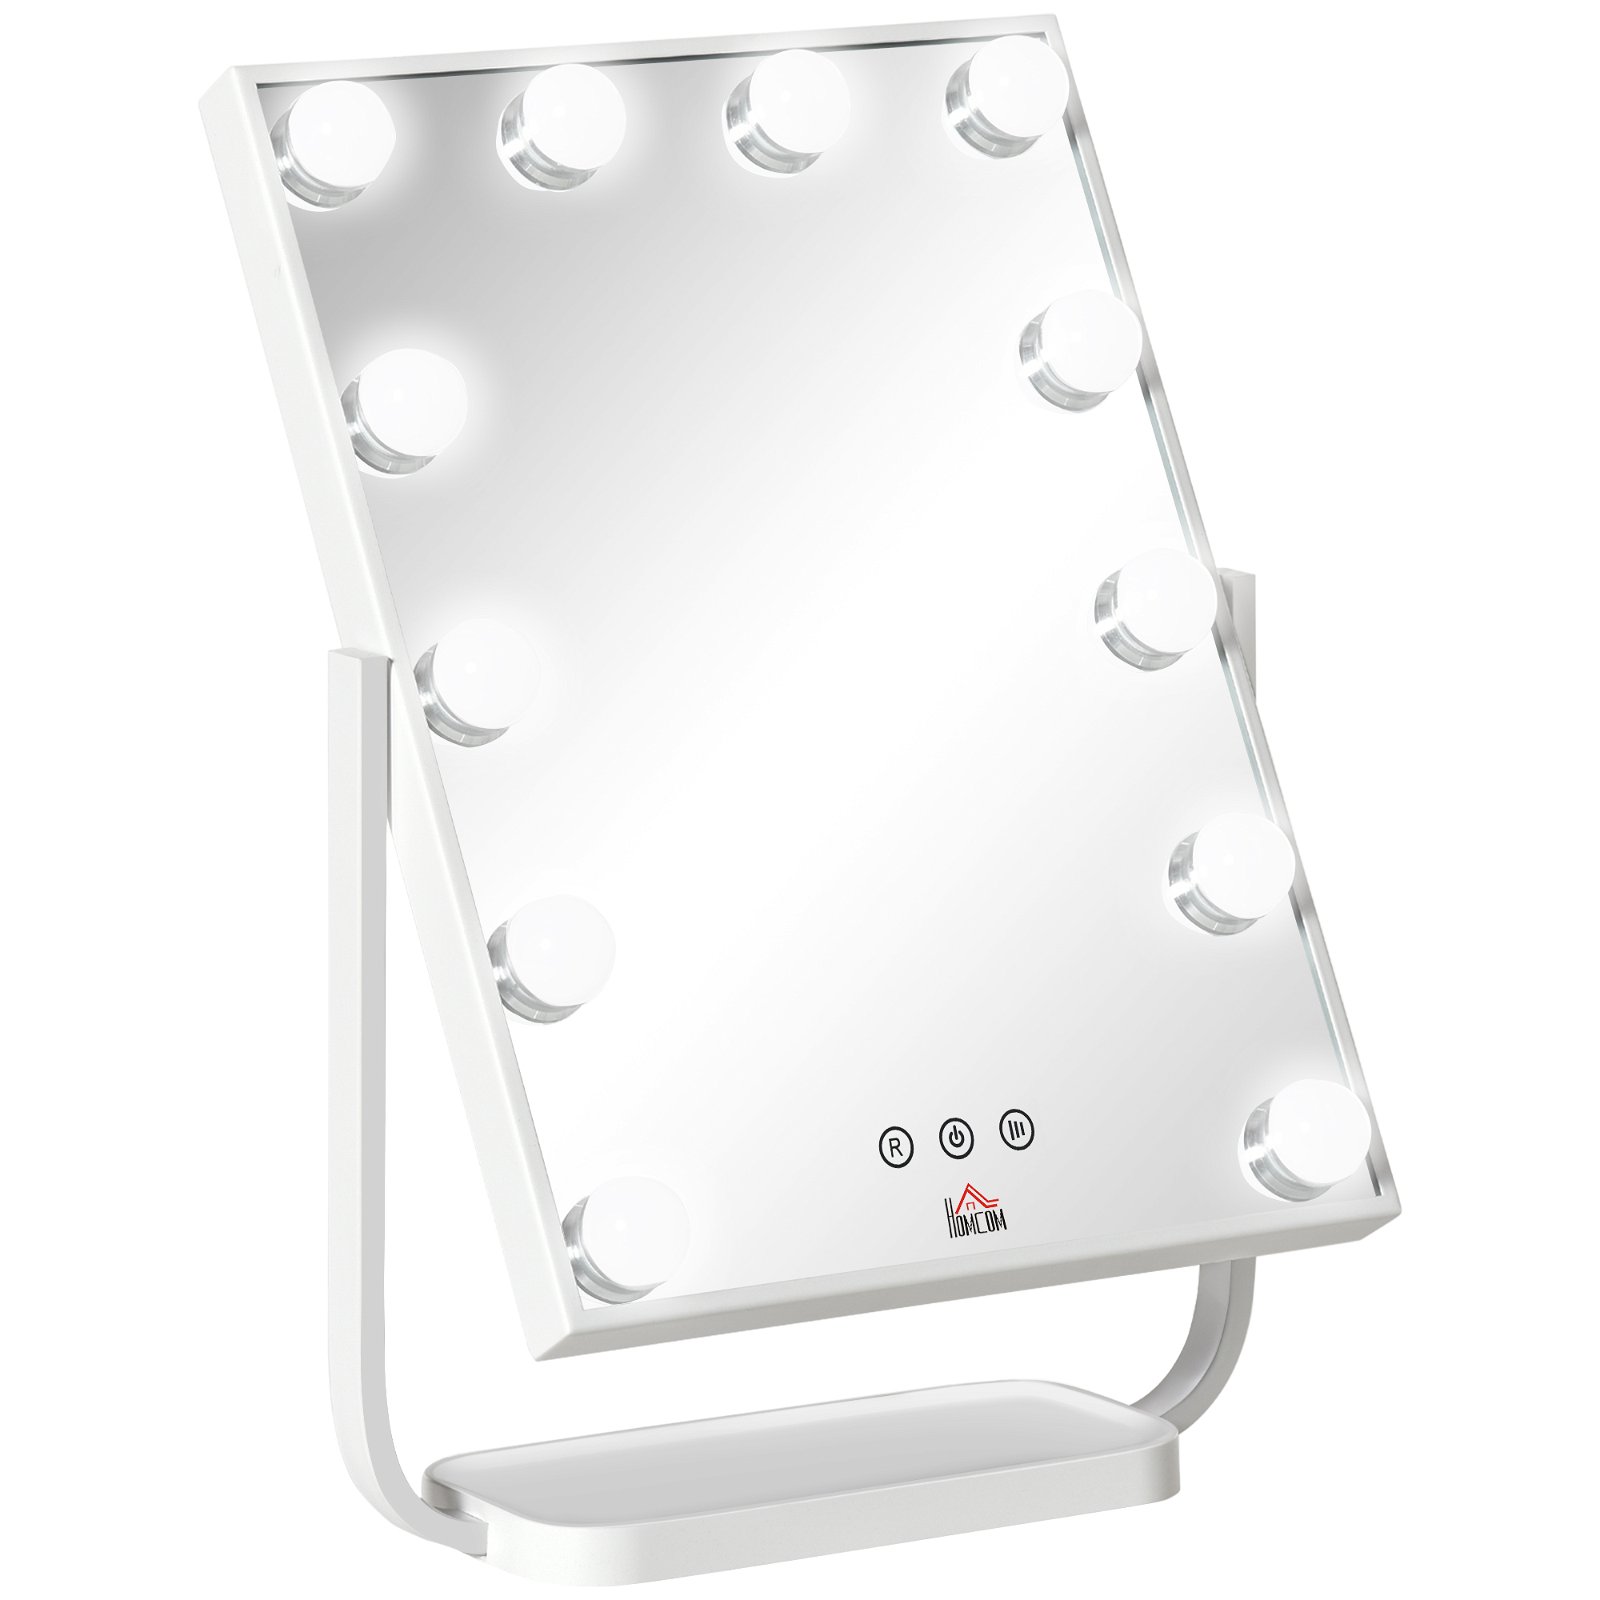 BULB TINY - Espelho de Maquilhagem com 9 Lâmpadas de Luz LED - Branco, Espelhos de Maquilhagem, ESPELHOS